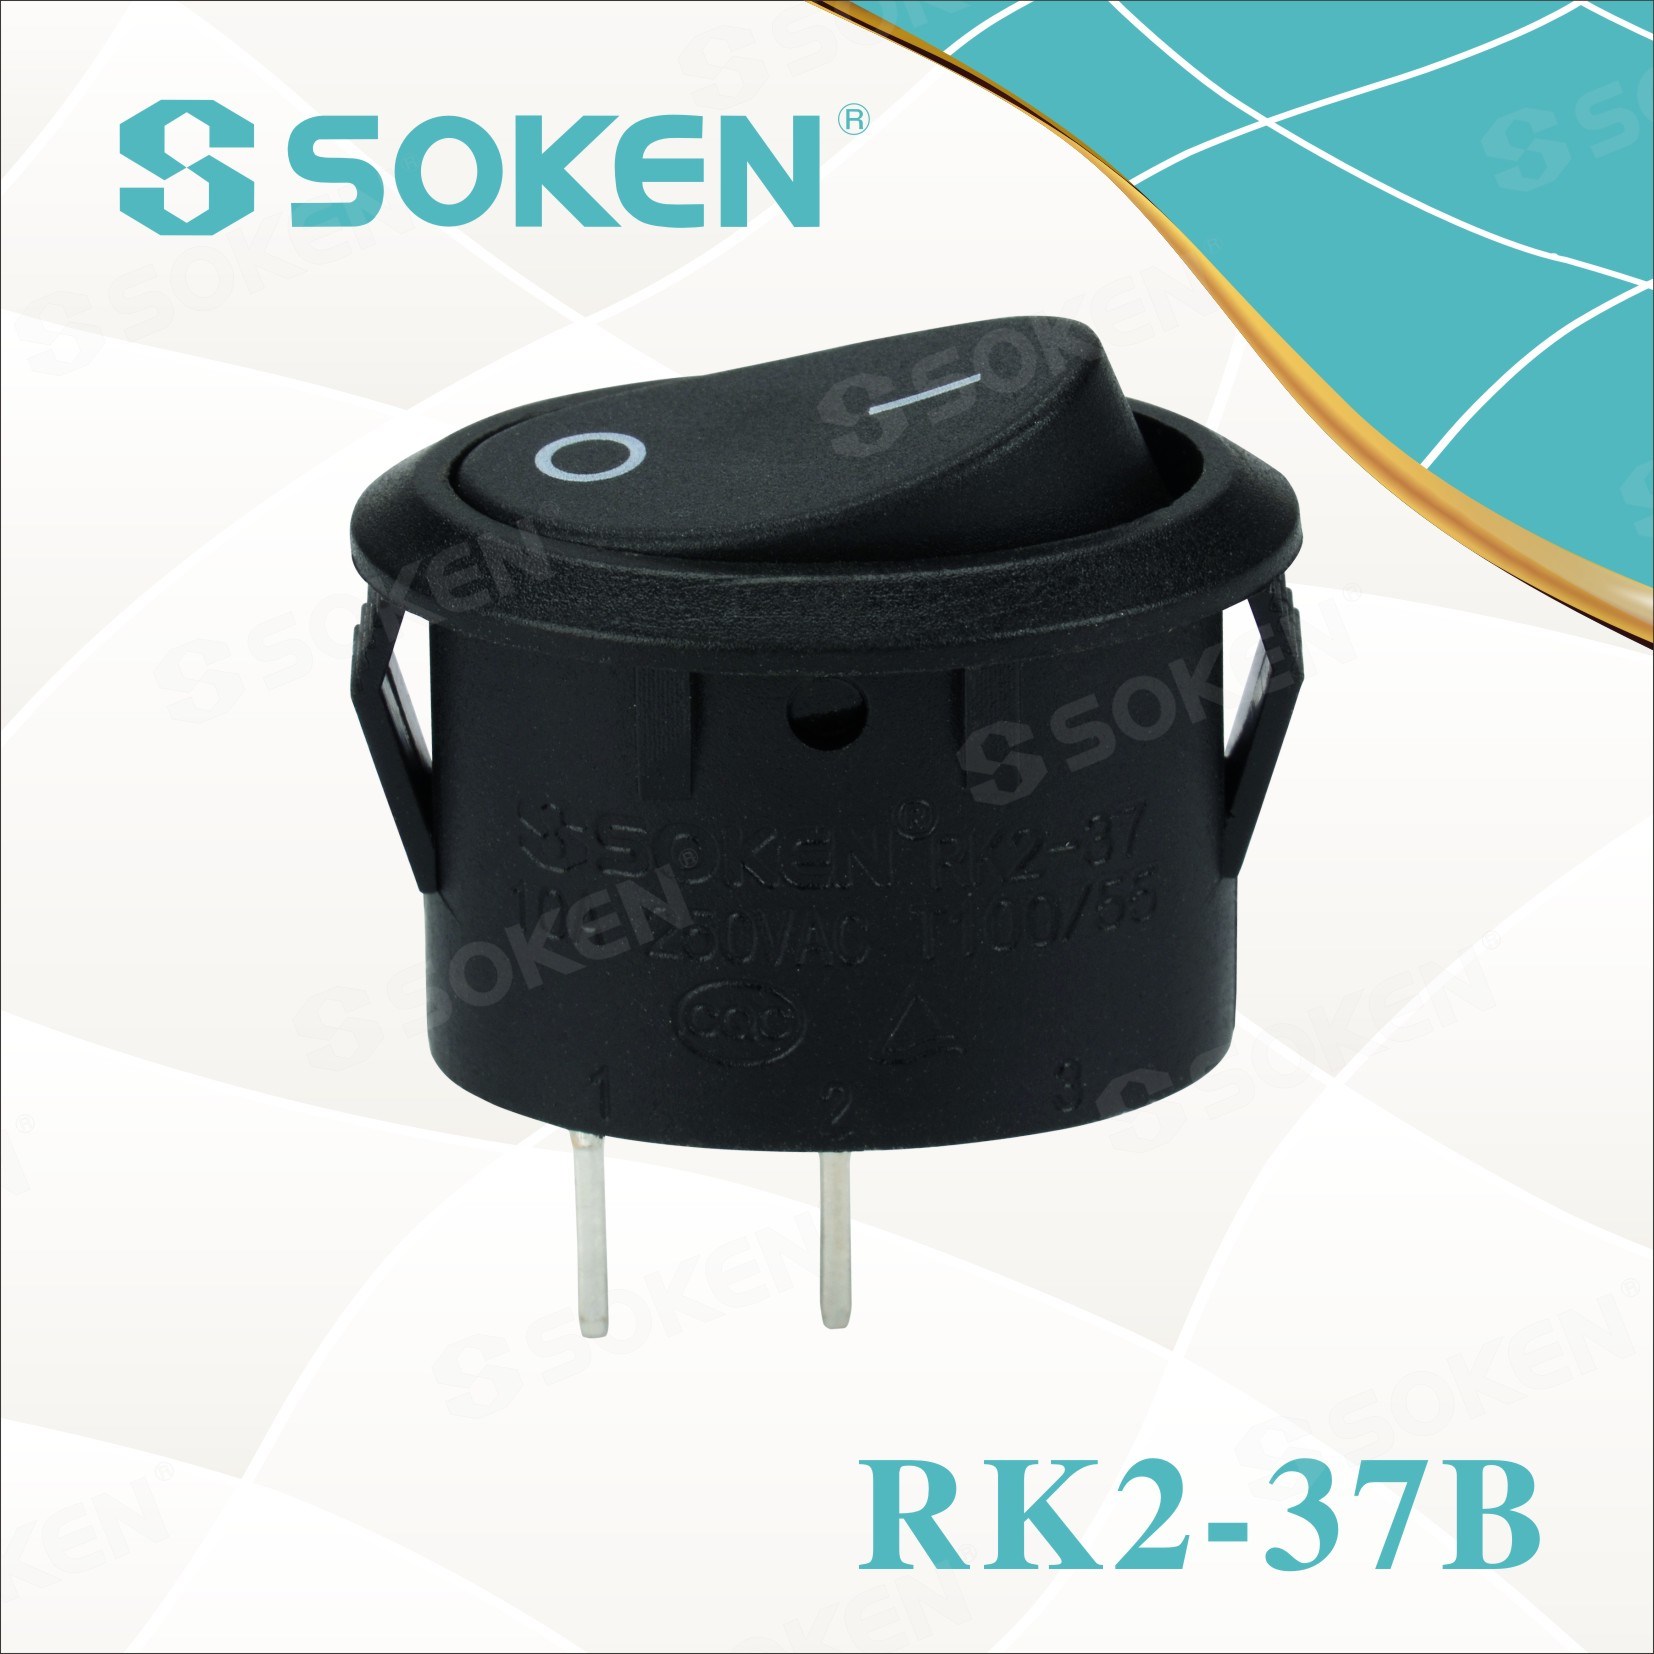 Soken Rk2-37b Rocker Switch